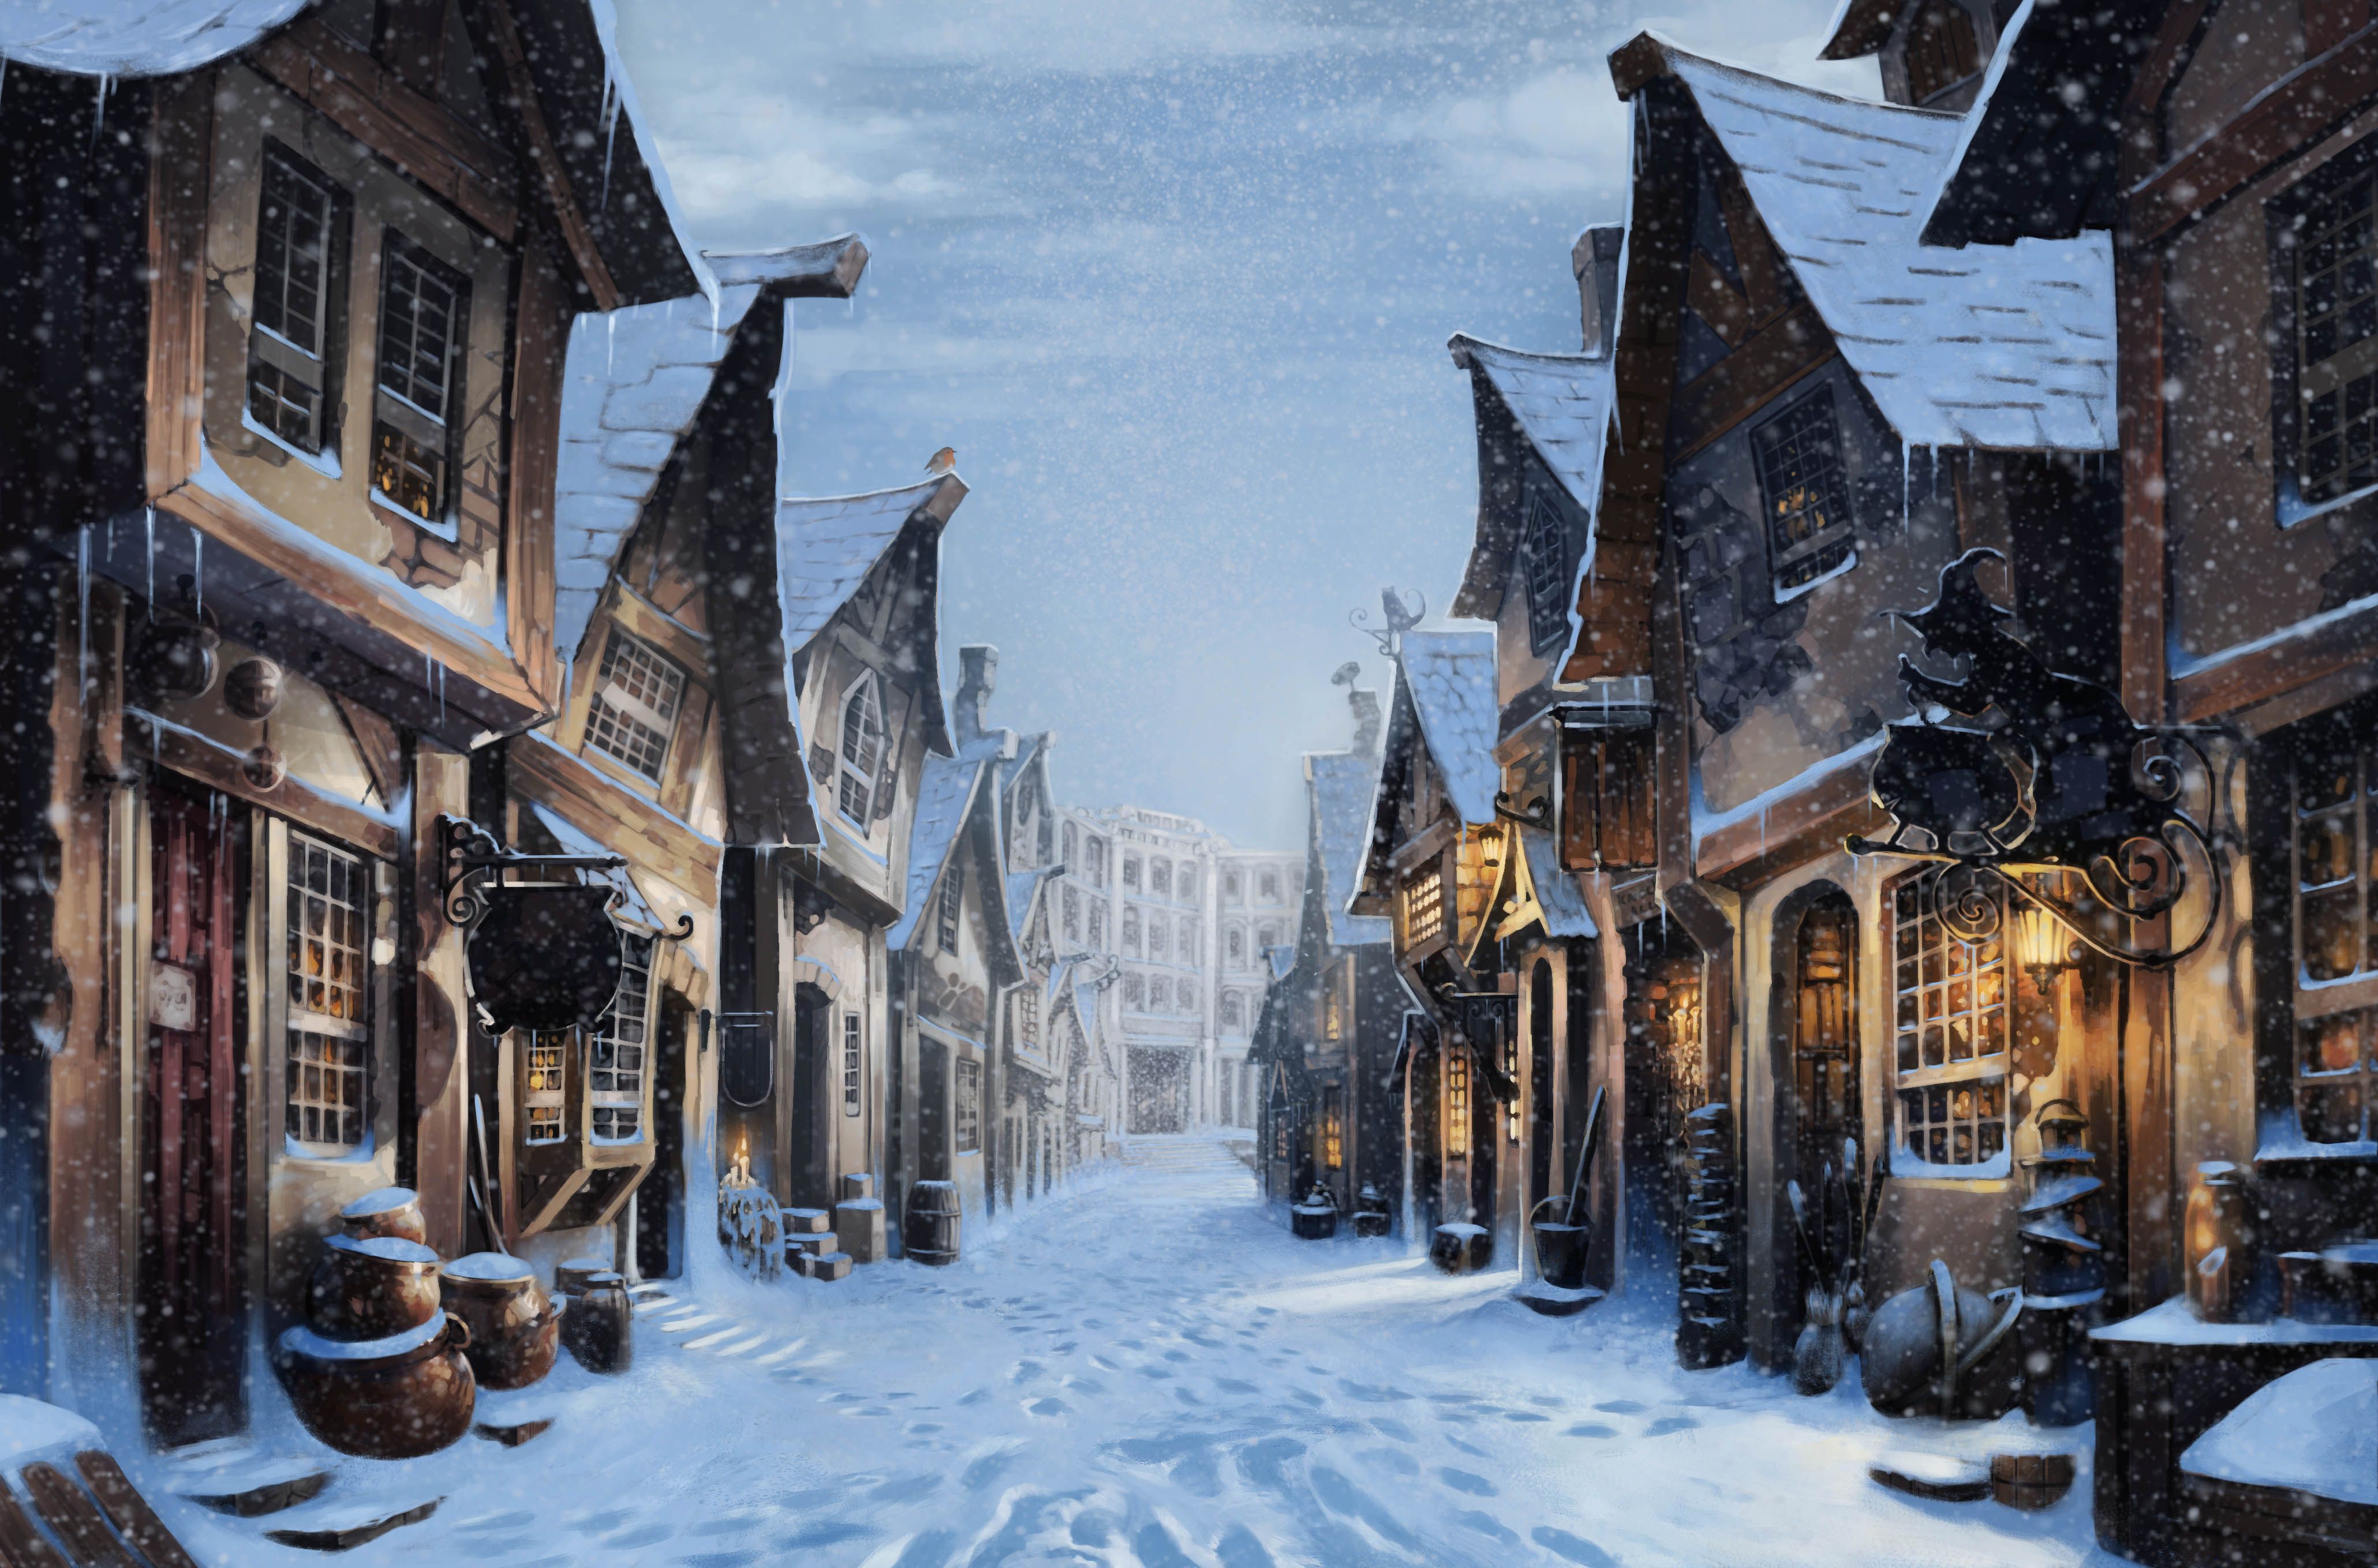 Khám phá ngôi làng Giáng Sinh tuyệt đẹp của Harry Potter thông qua bộ ảnh nền độc đáo. Những hình ảnh về ngôi làng trang trí đầy màu sắc, những chiếc đèn lấp lánh và những ngôi nhà trong truyền thuyết của Harry Potter sẽ khiến bạn cảm thấy thích thú.